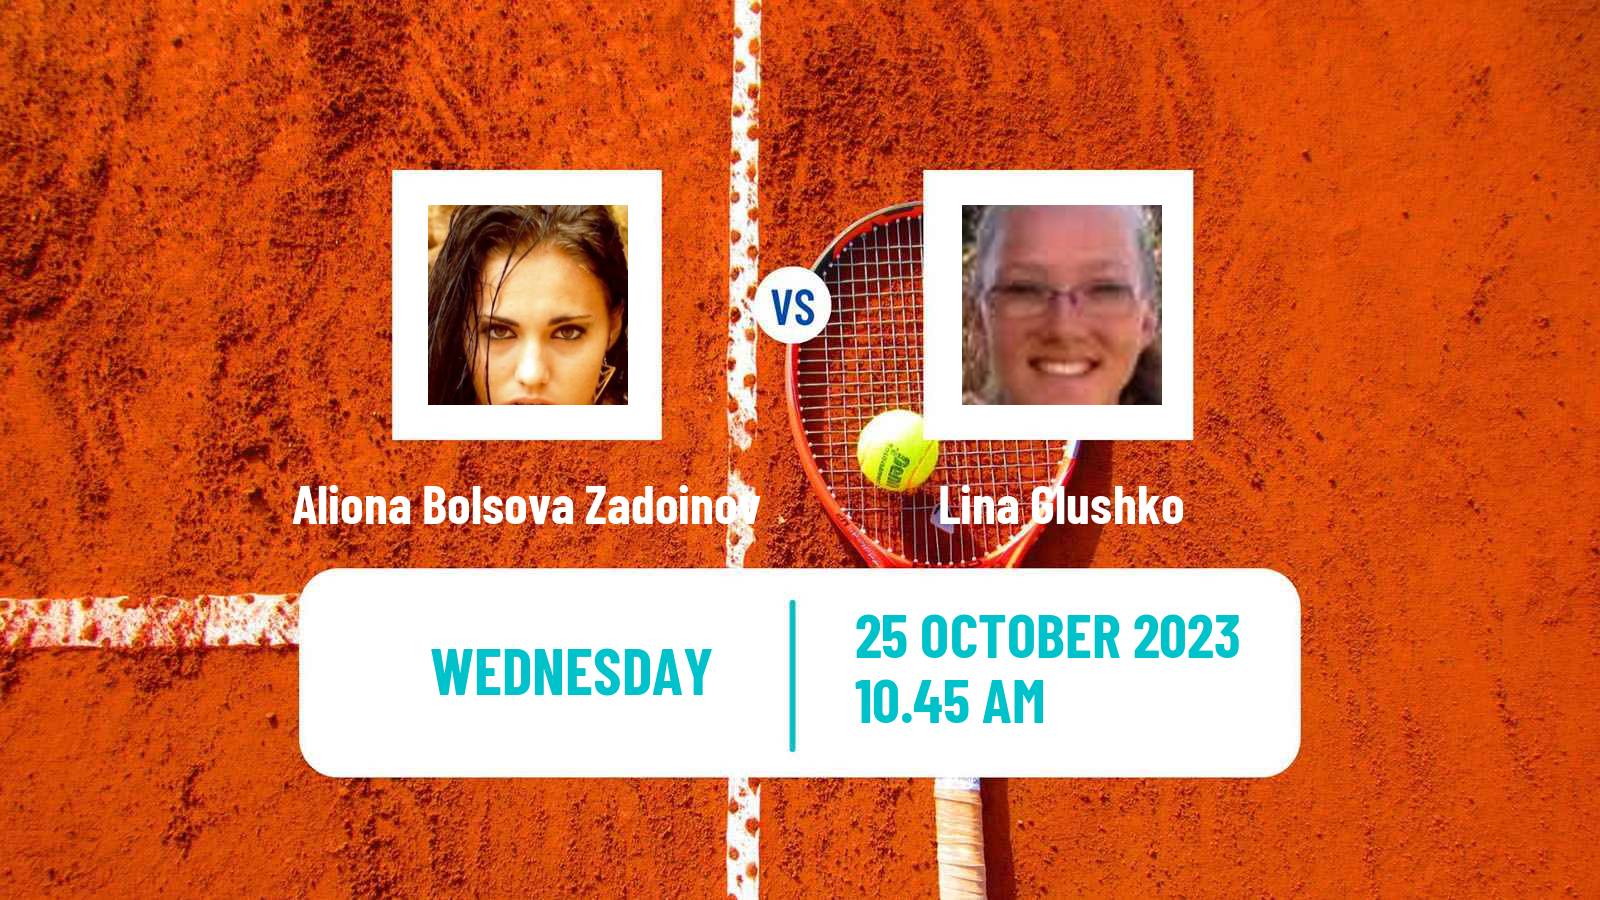 Tennis ITF W100 Les Franqueses Del Valles Women Aliona Bolsova Zadoinov - Lina Glushko